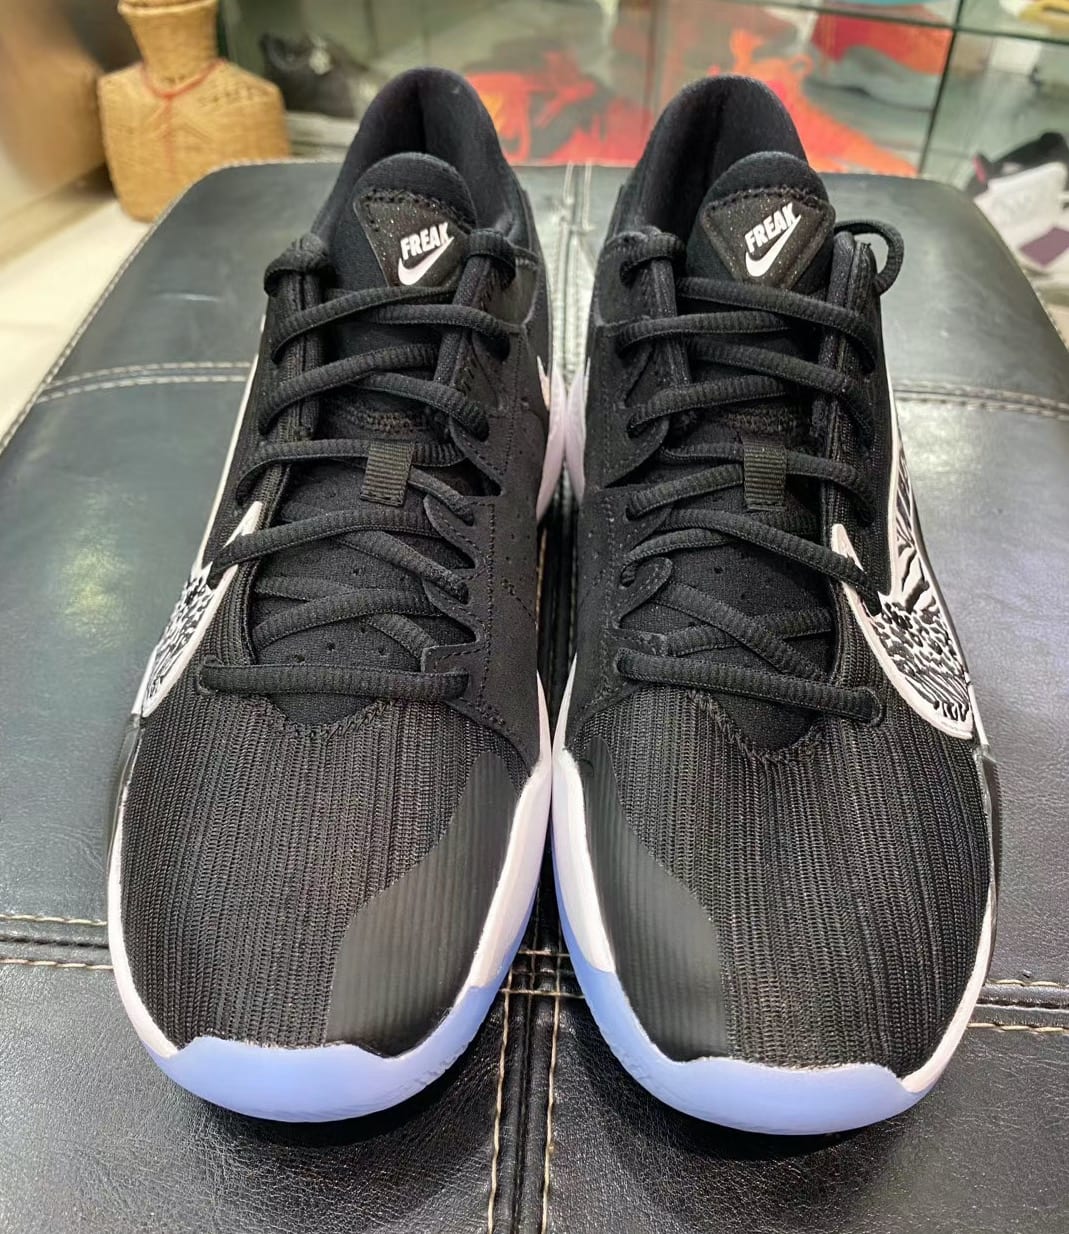 Nike Zoom Freak 2 Black White Release Date CK5424-001 Front